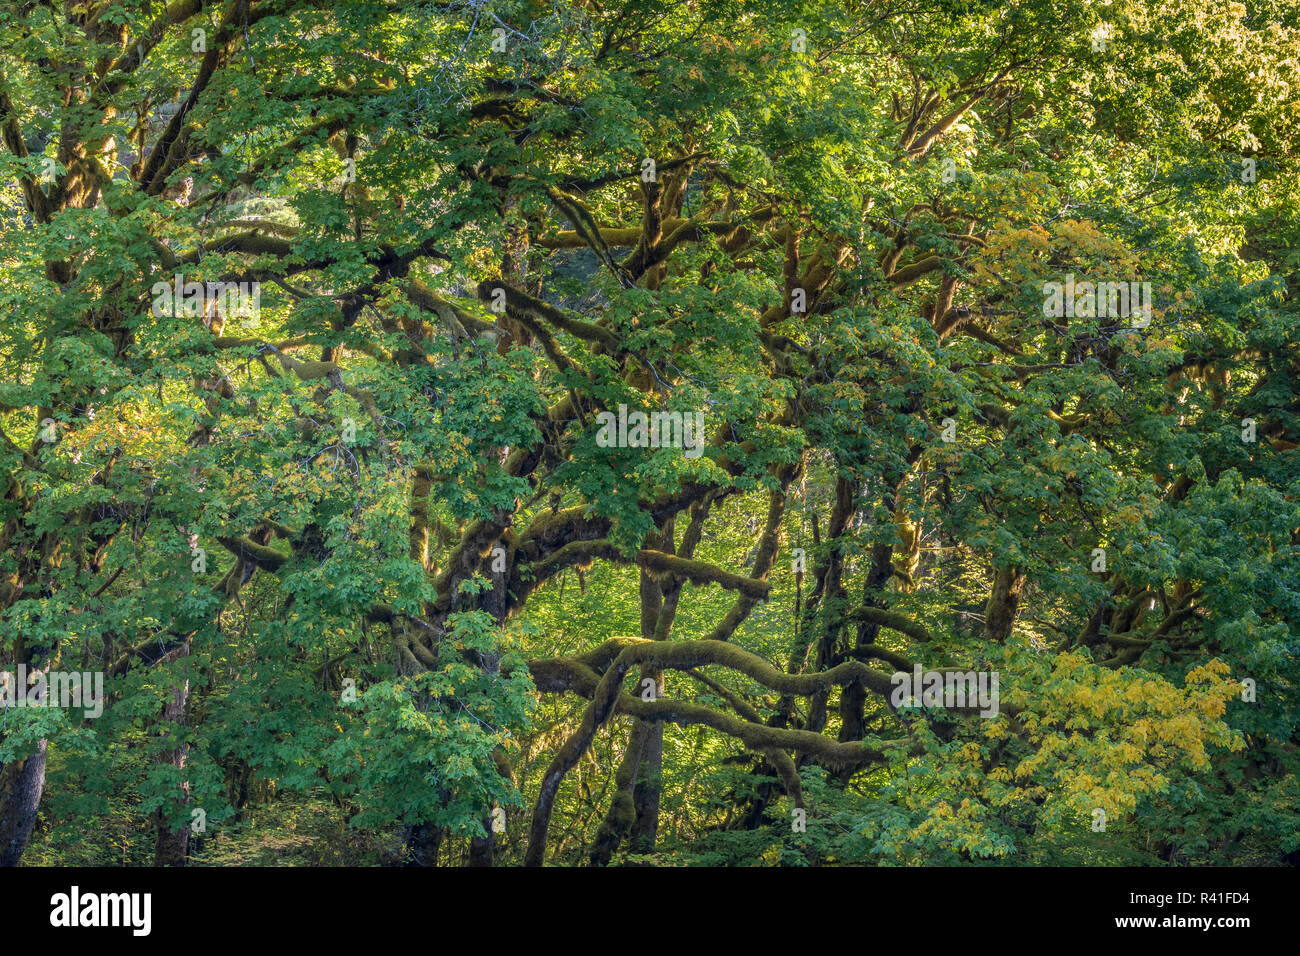 USA, Washington State, Olympic National Forest. Backlit bigleaf maple trees. Stock Photo